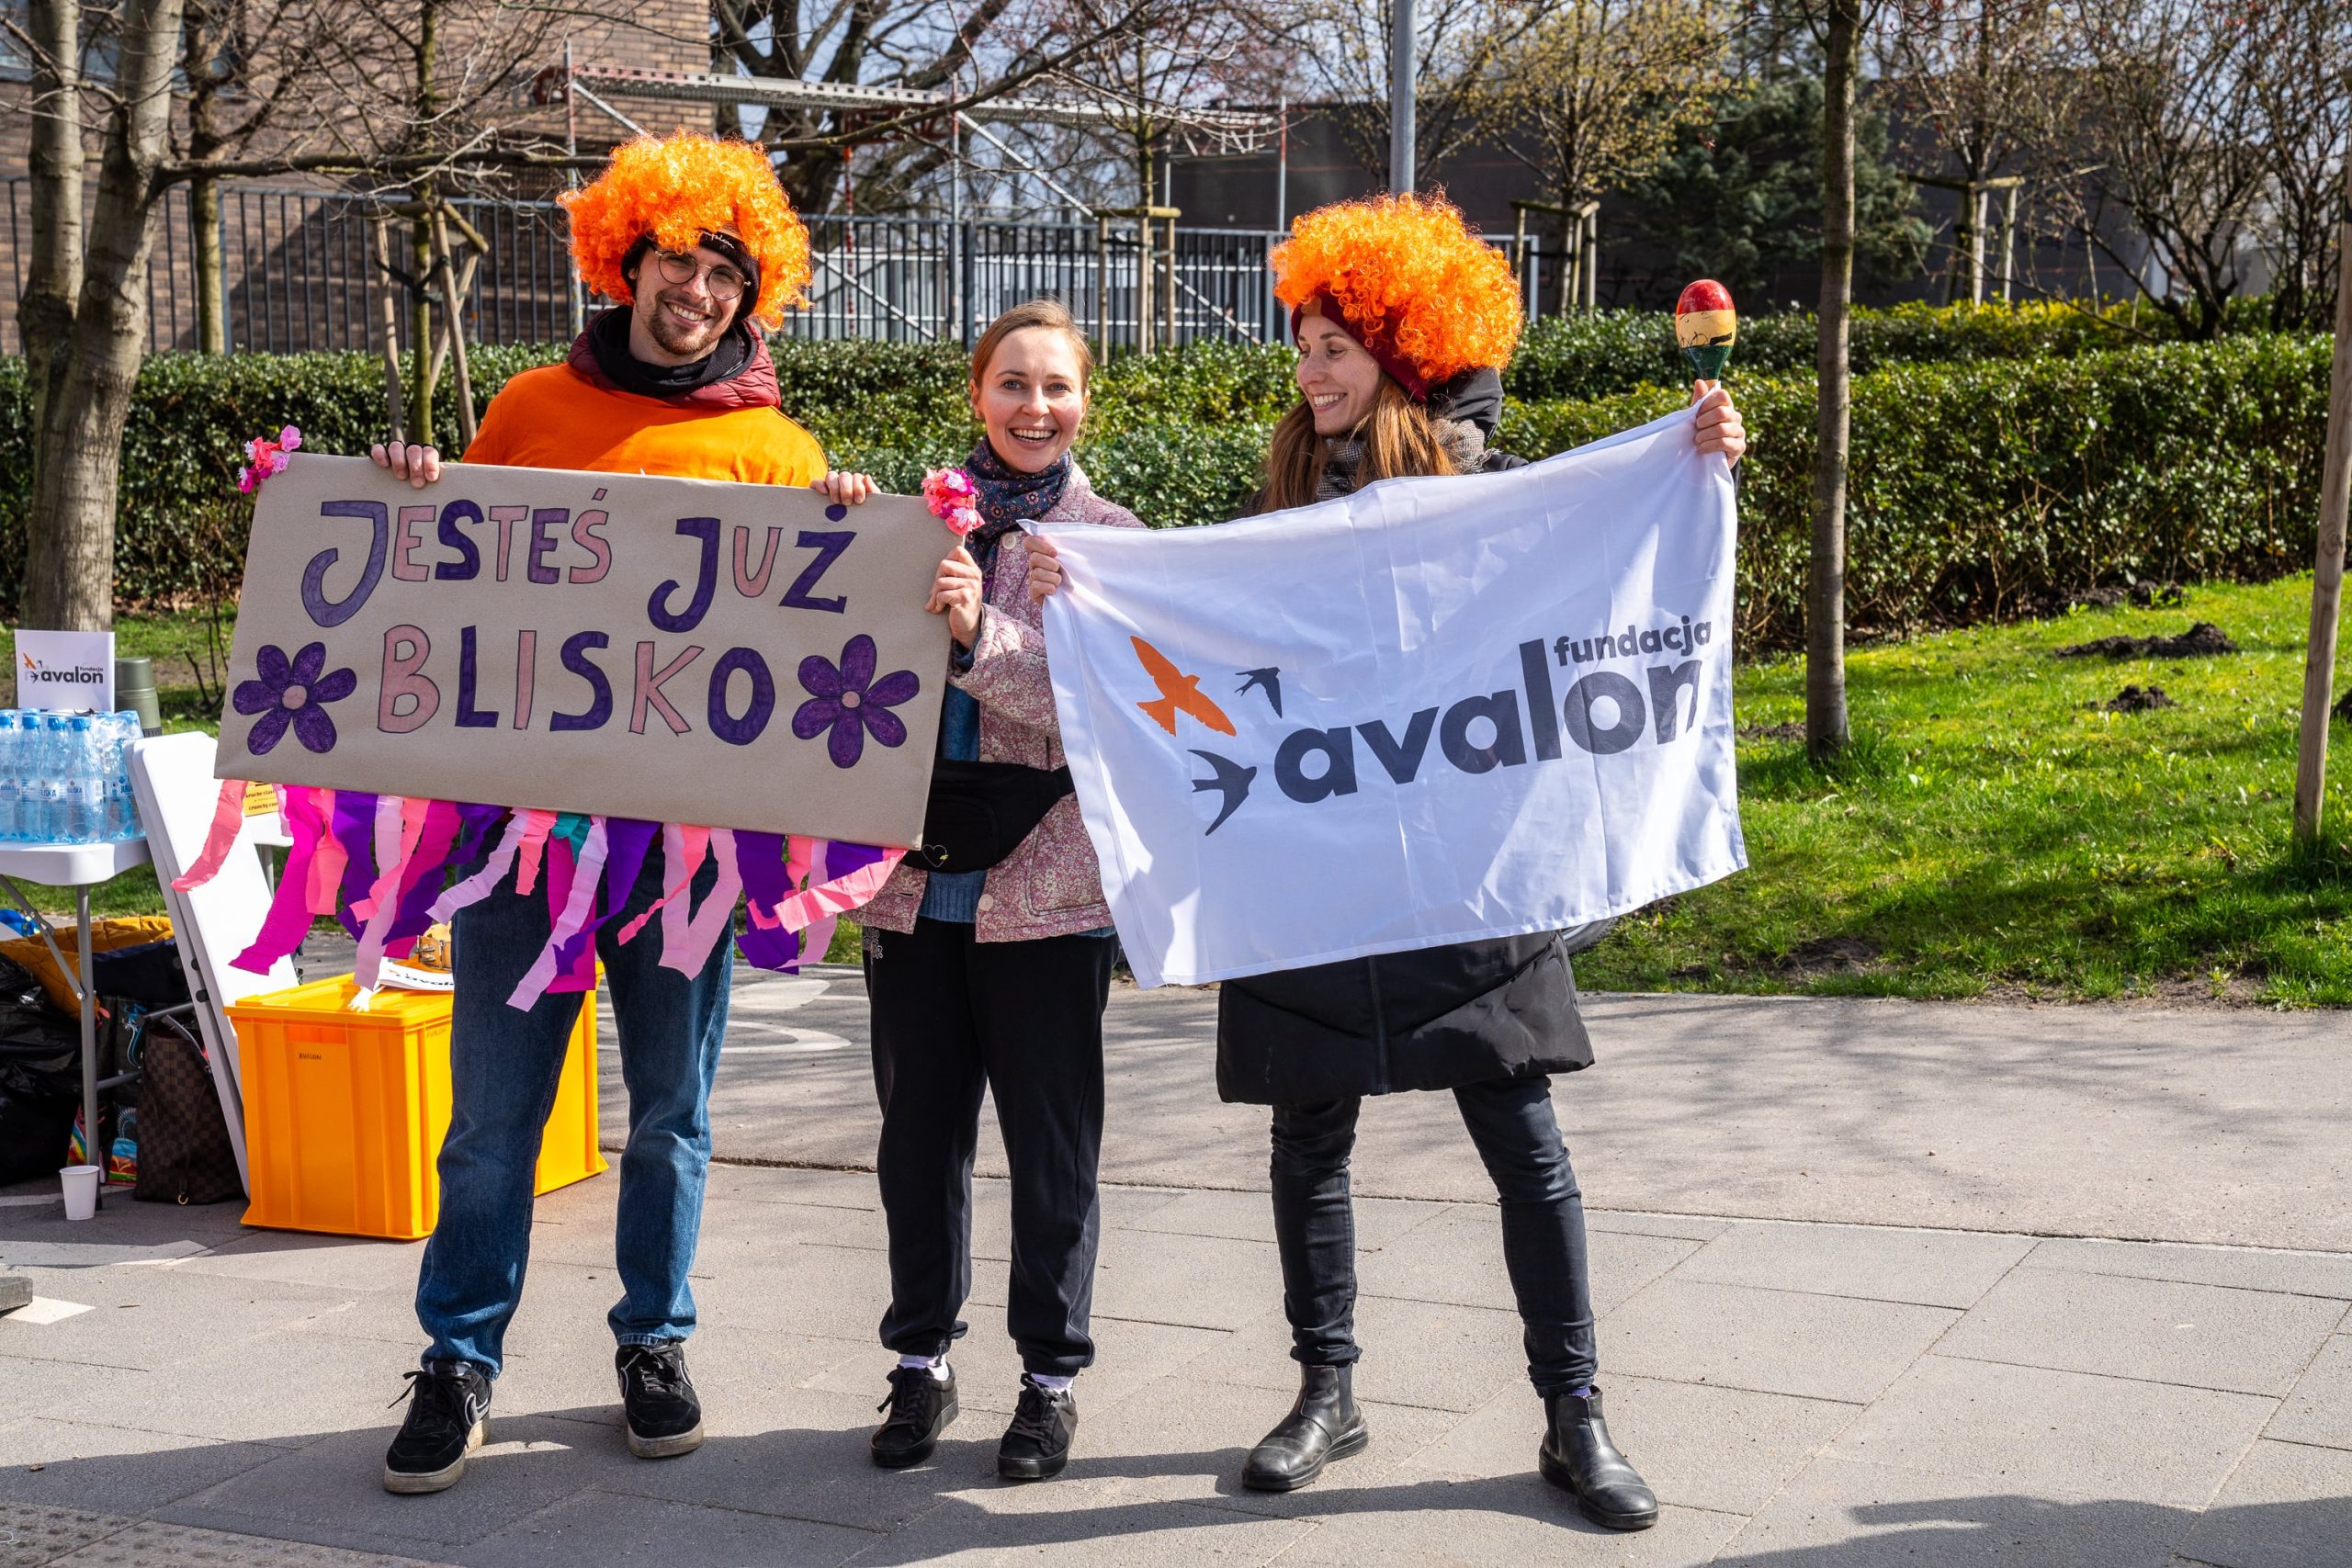 Zdjęcie ze strefy kibica Fundacji Avalon podczas Połmaratonu warszawskiego. Kobieta trzyma flagę z logotypem fundacji Avalon, mężczyzna trzyma transparent z napisem Jesteś już blisko. Oboje mają pomarańczowe peruki. Pomiędzy nimi stoi uśmiechnięta kobieta.